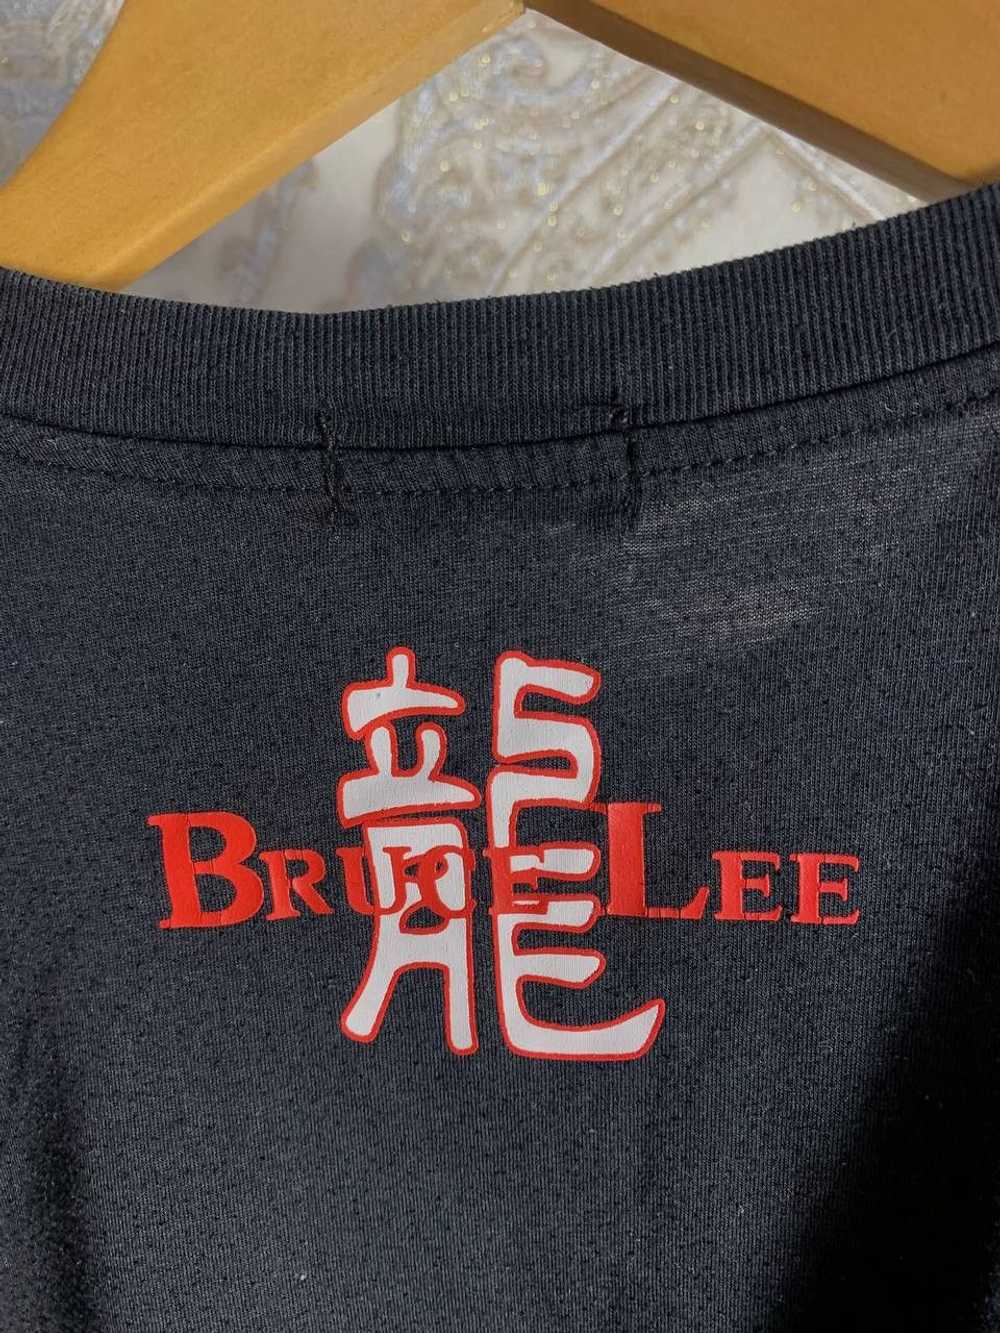 Bruce Lee × Streetwear × Vintage VERY RARE BRUCE … - image 6